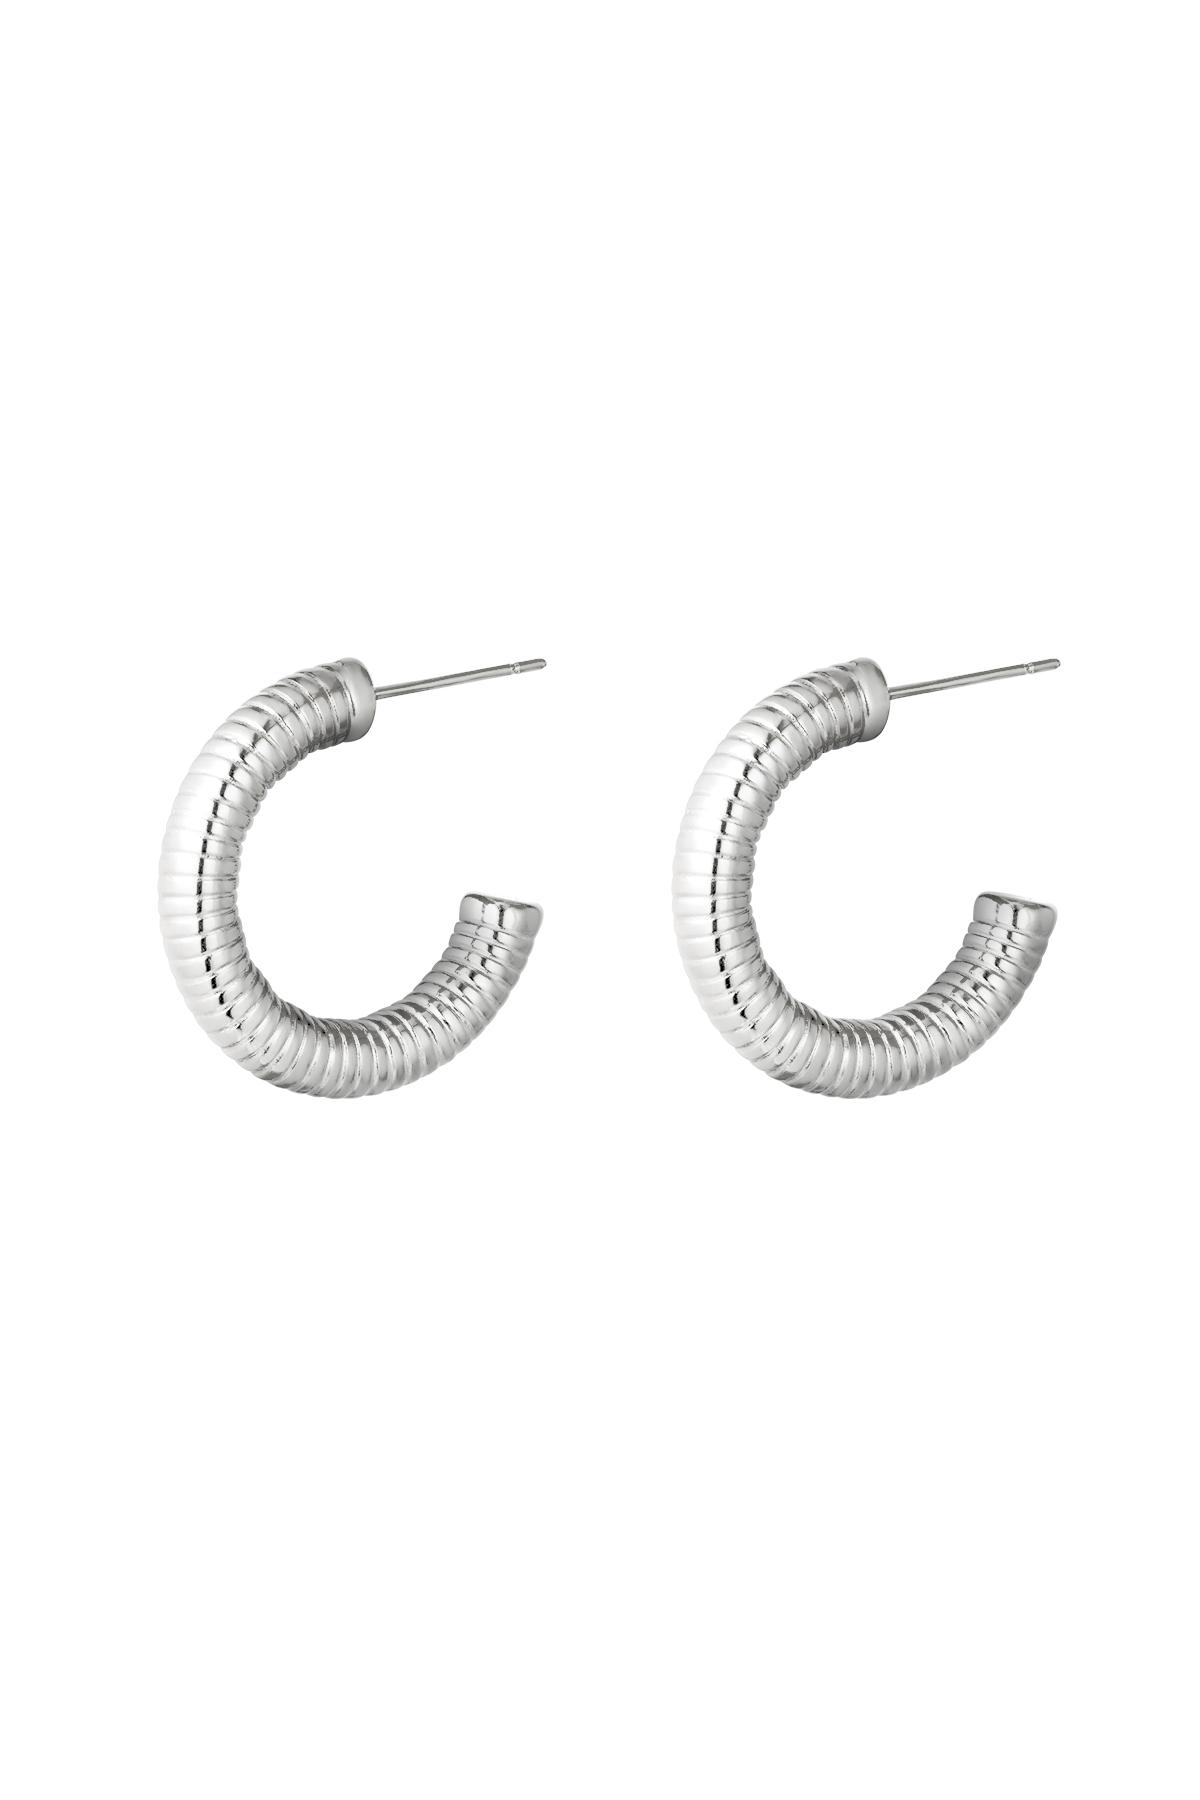 Earrings Hoops Spring Silver Stainless Steel 